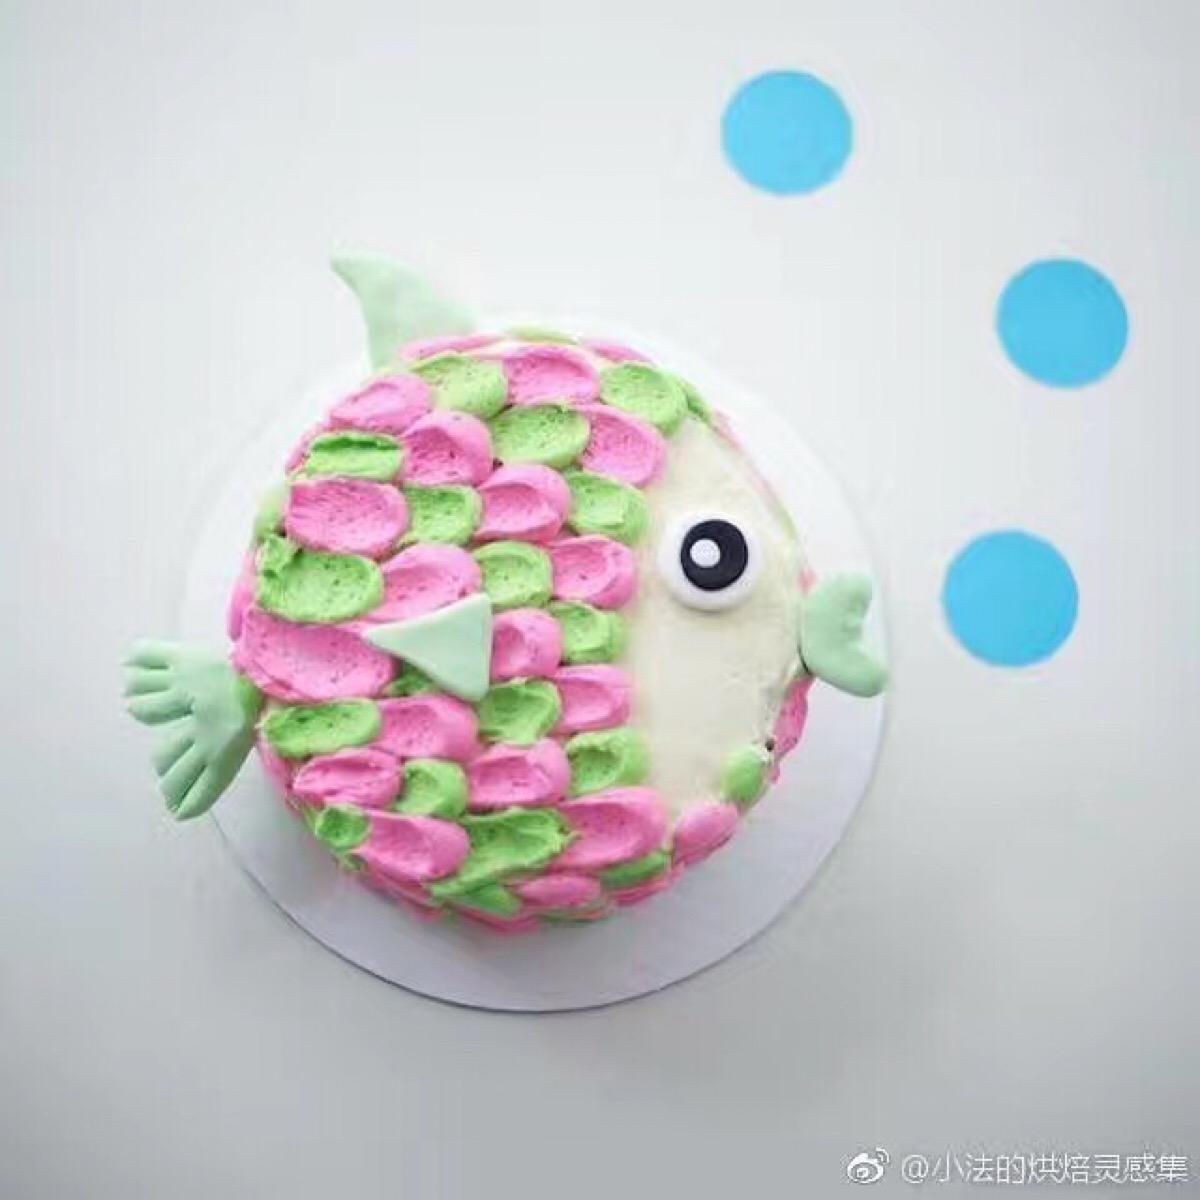 以鱼的形式手工制造蛋糕 库存图片. 图片 包括有 艺术, 糖果, 庆祝, 曲奇饼, 海洋, 节假日, 奶油 - 110910753